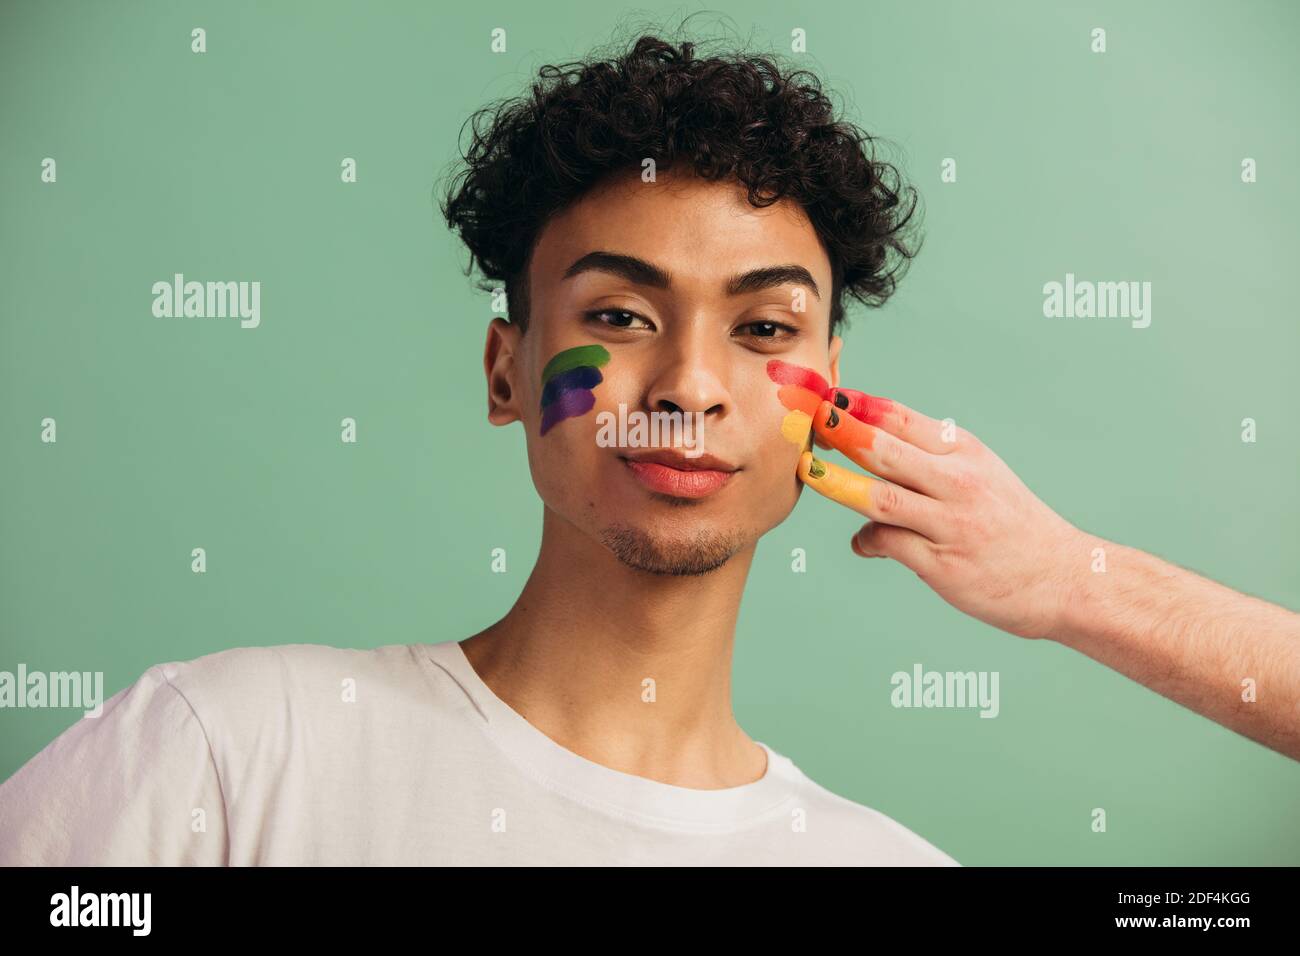 Ritratto di giovane uomo con volto dipinto con bandiera arcobaleno di orgoglio gay. Pittura a mano lgbt colore arcobaleno sul viso di un uomo. Foto Stock